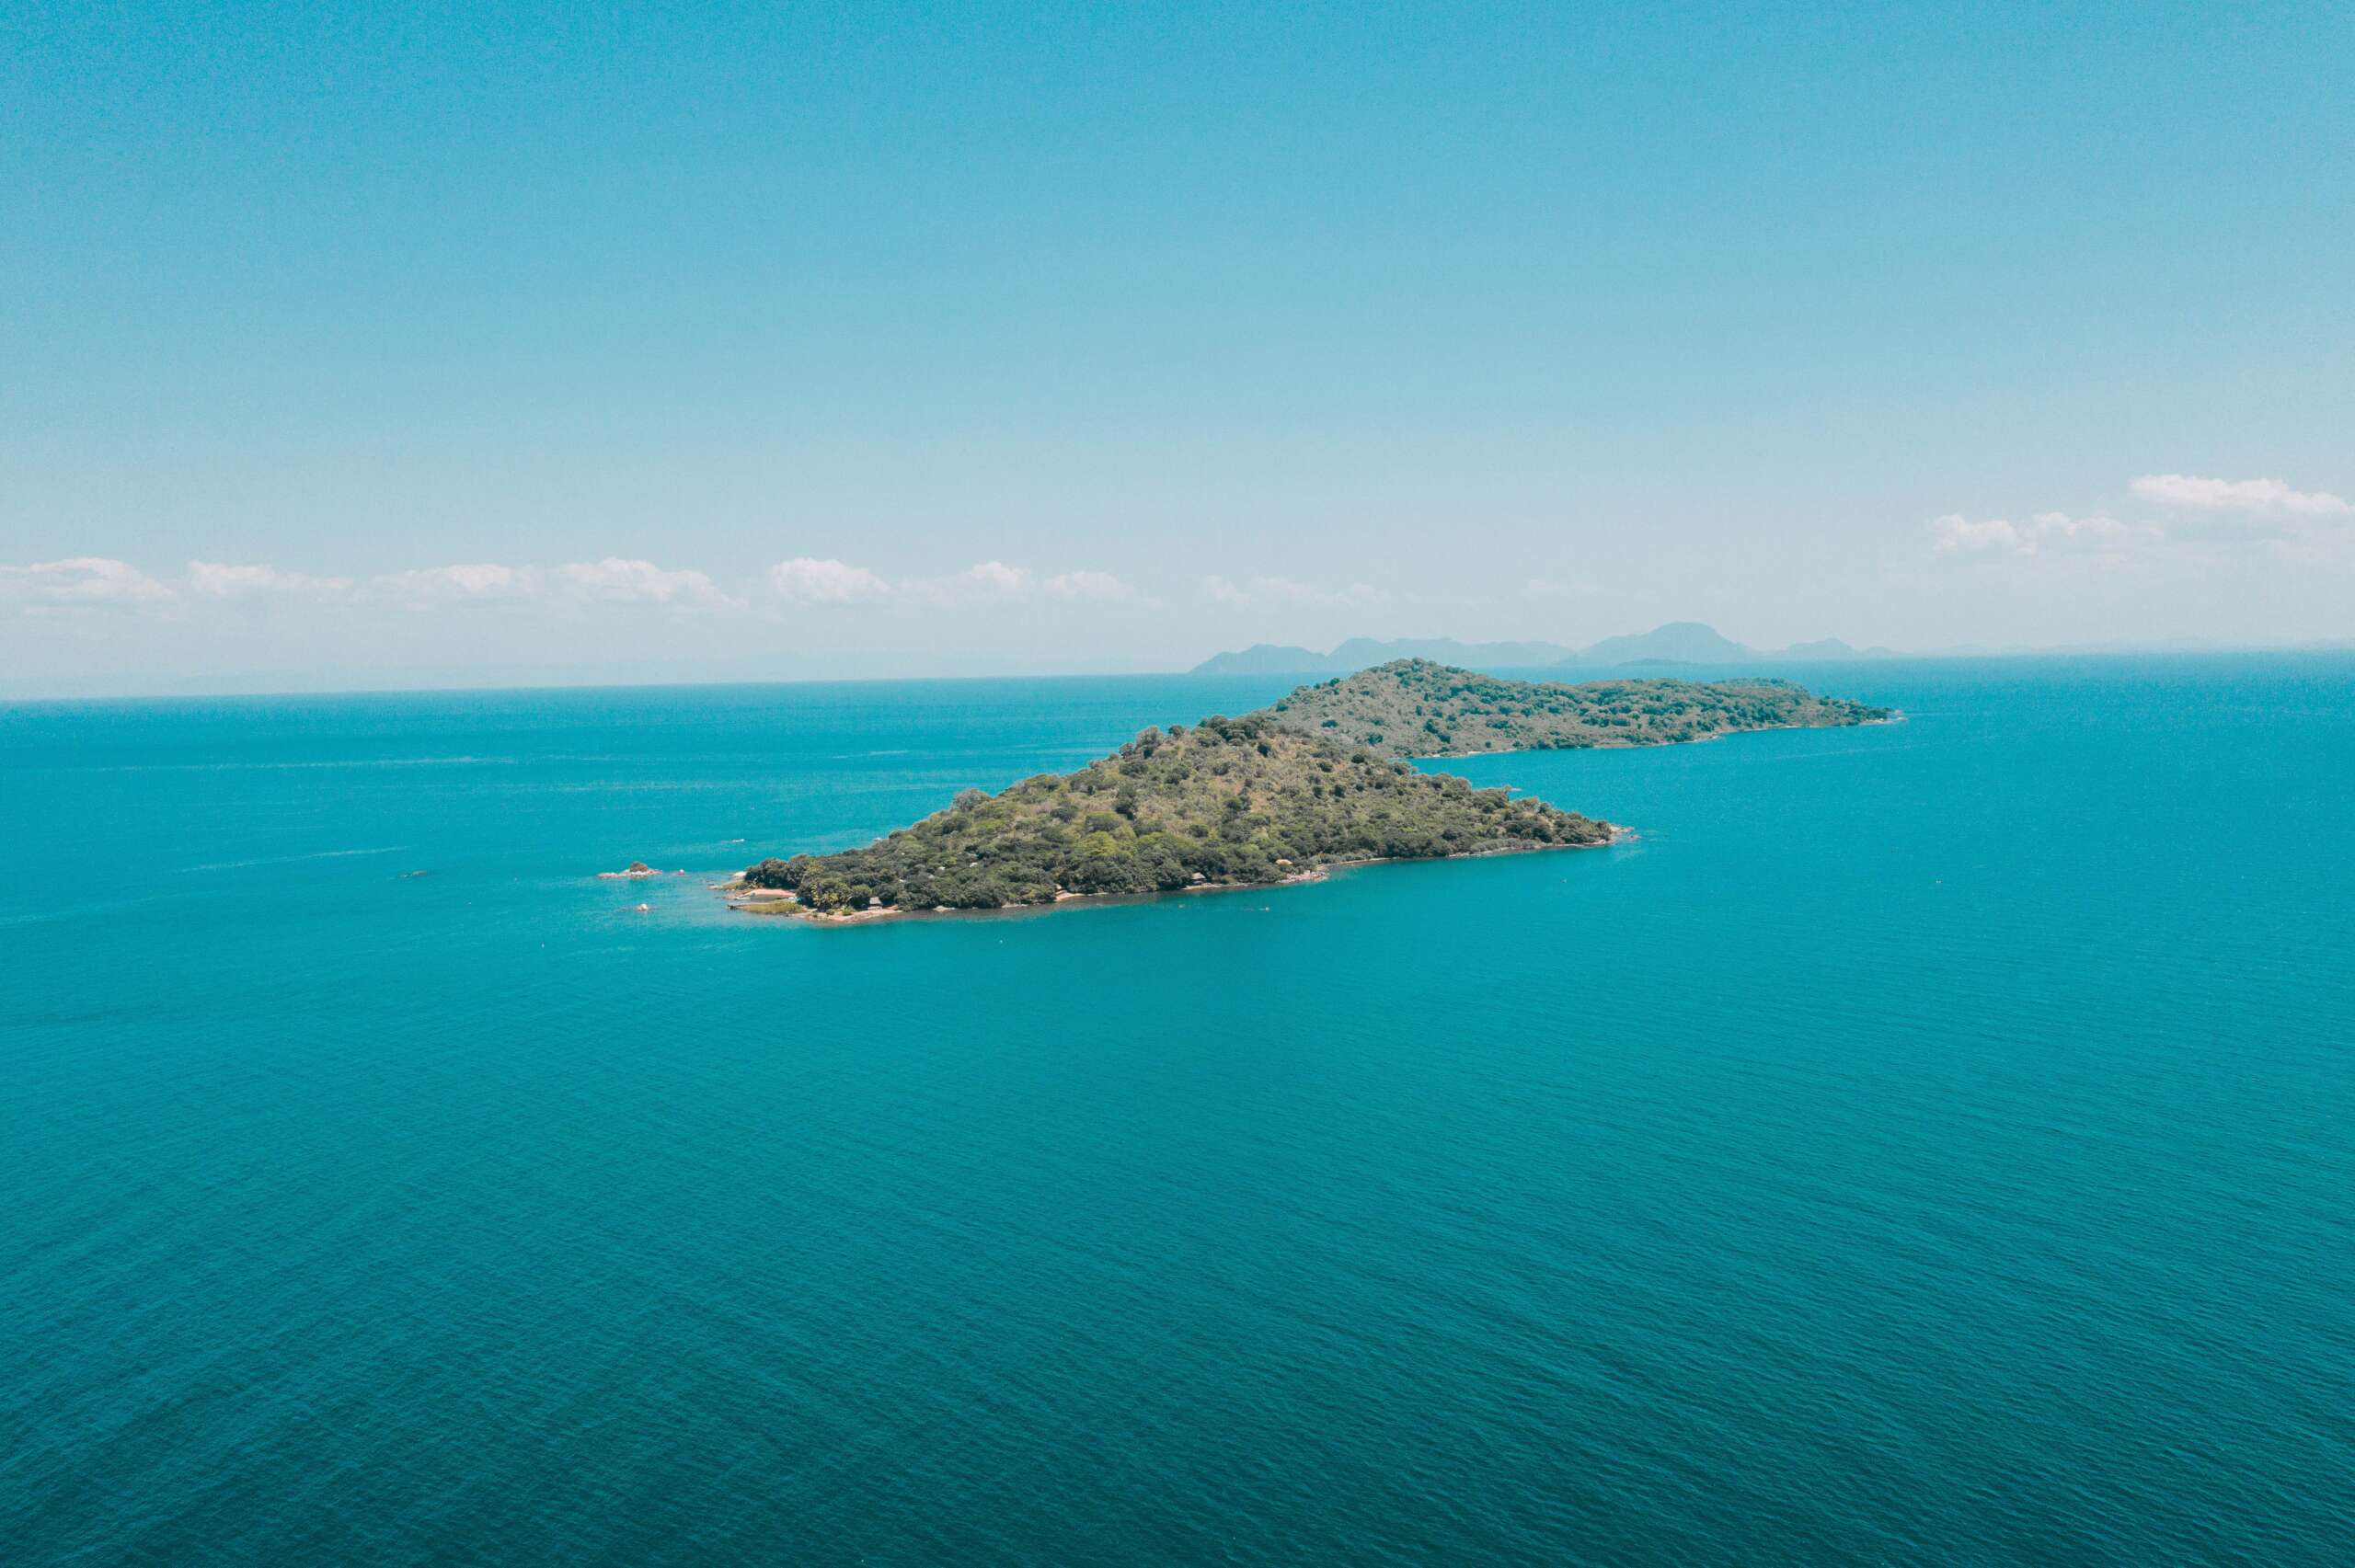 https://visitmalawi.mw/wp-content/uploads/2022/01/Lake-Malawi-Blue-Zebra-islands-scaled.jpg